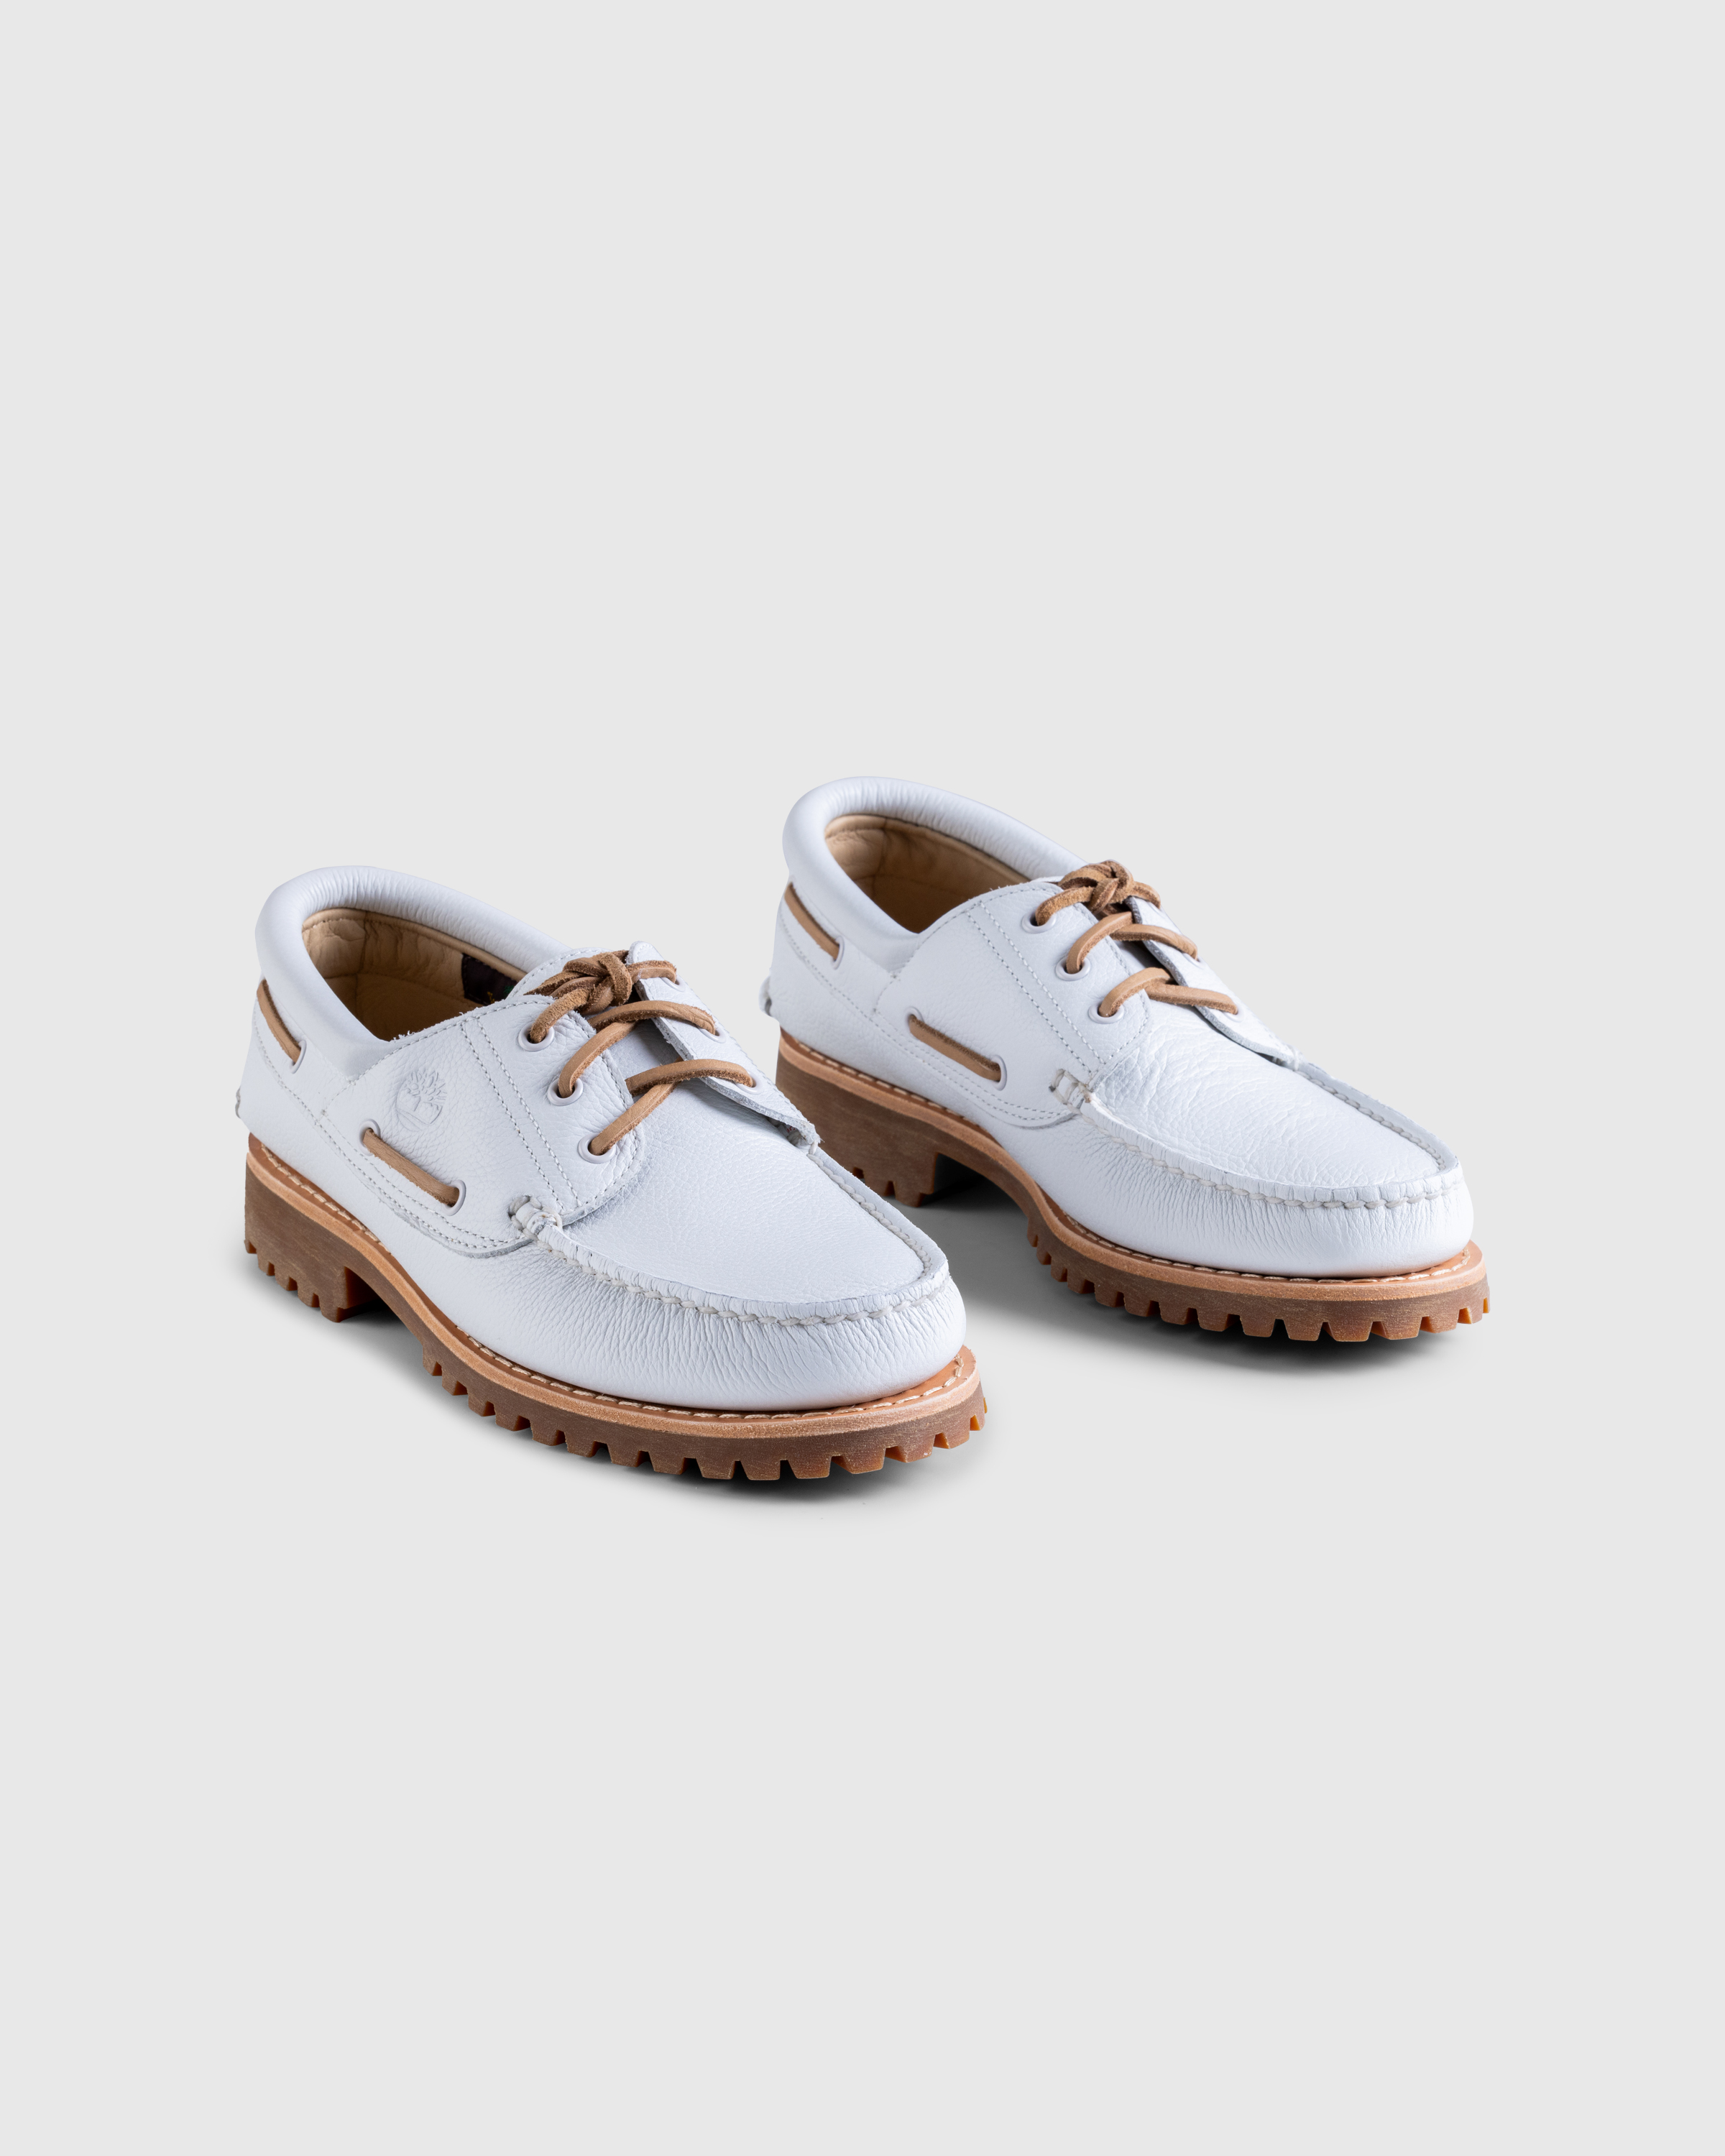 Timberland – 3-Eye Lug Boat Shoe White - Shoes - White - Image 3